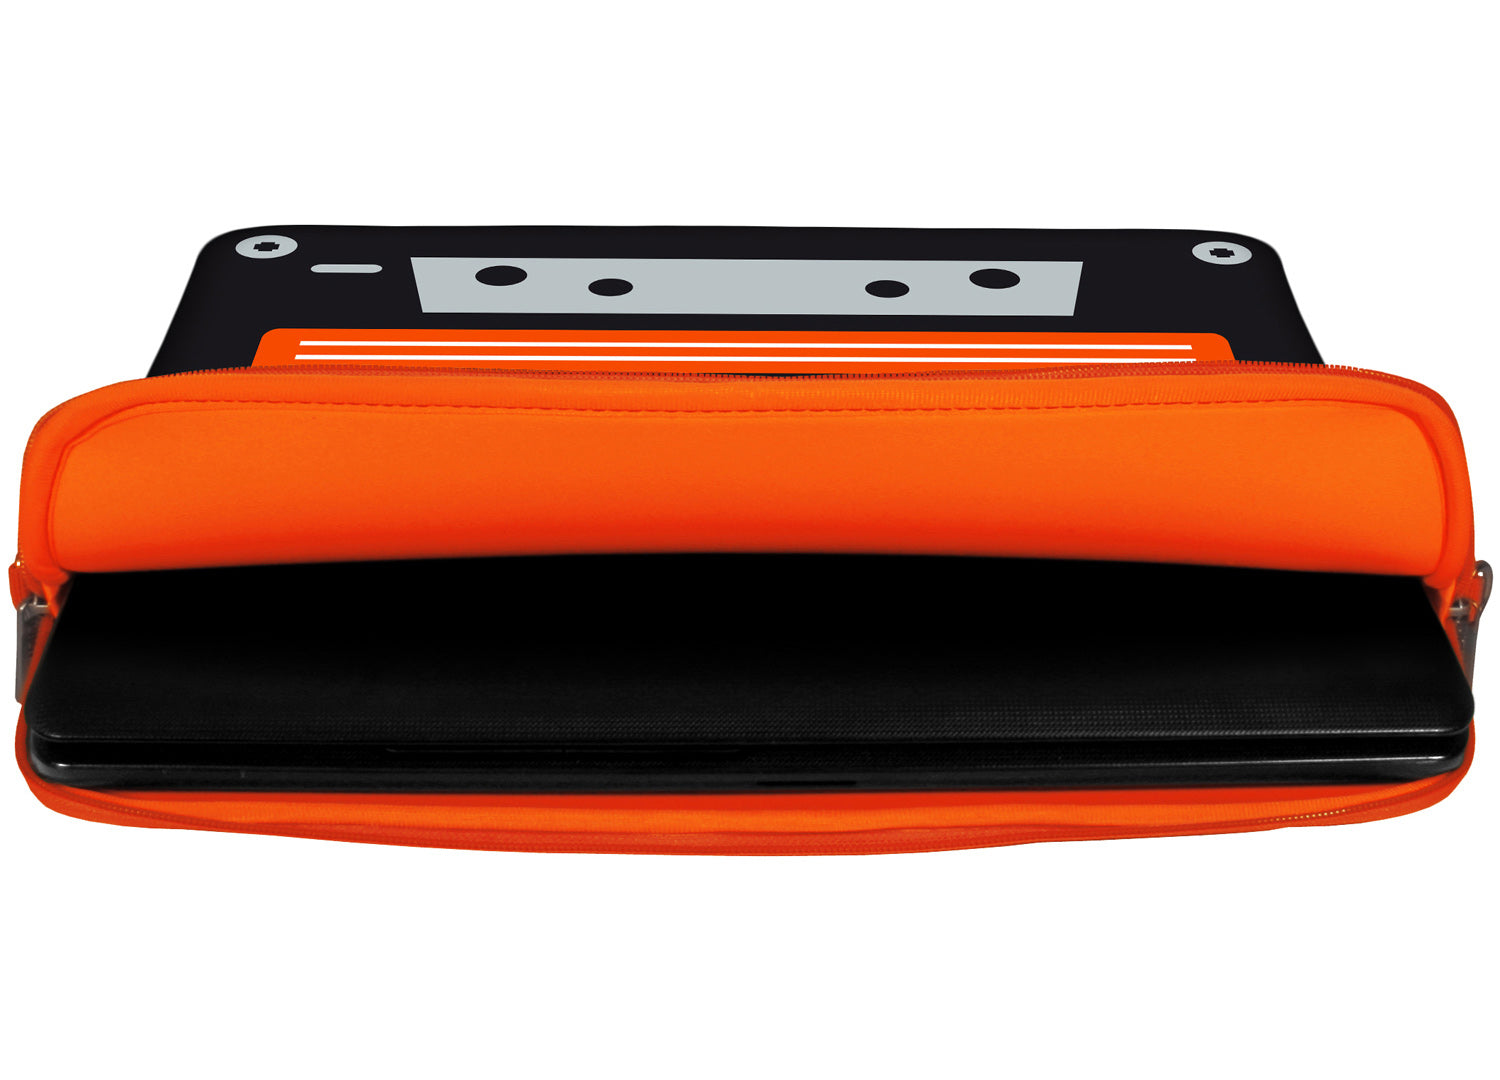 Innenansicht mit Schutzlippen der LS132 Old School Designer Laptop Tasche in orange aus wasserabweisendem Neopren